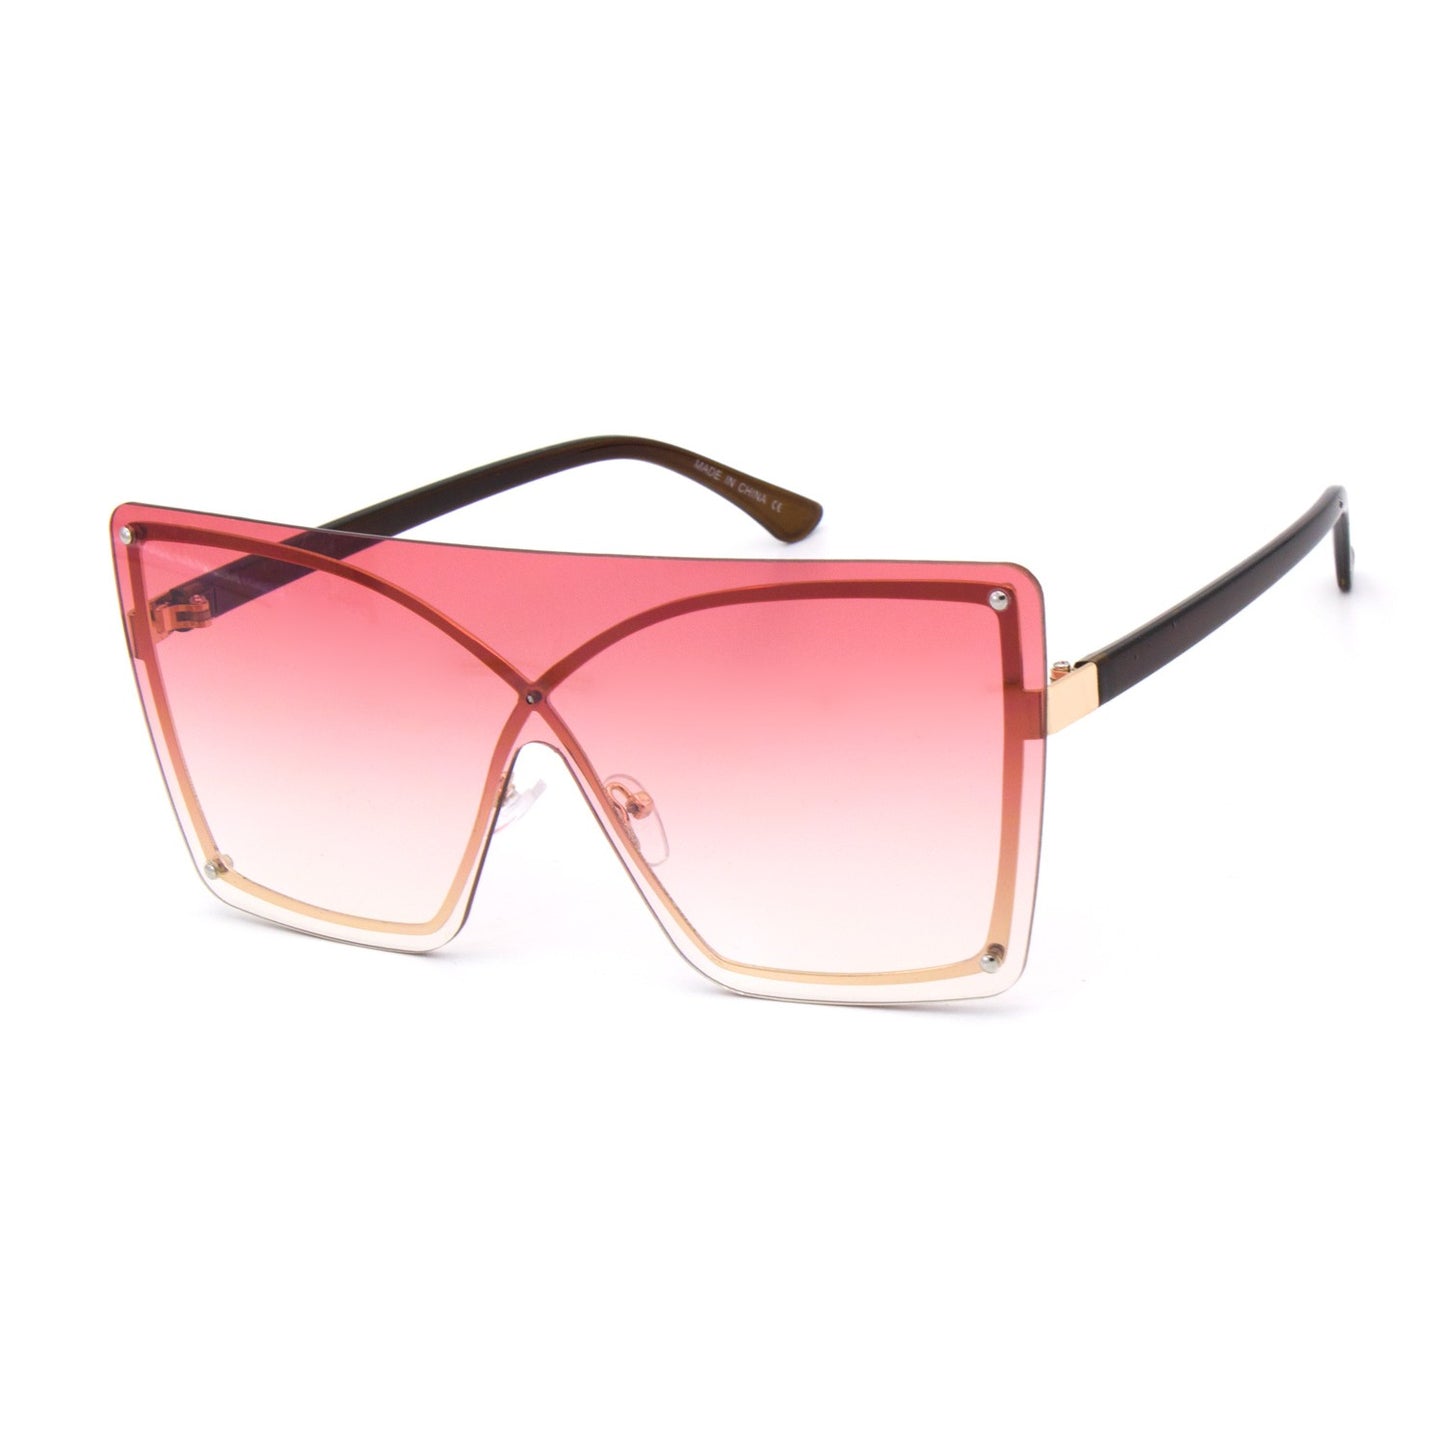 Trini Essie - Shield Sunglasses in Rasta